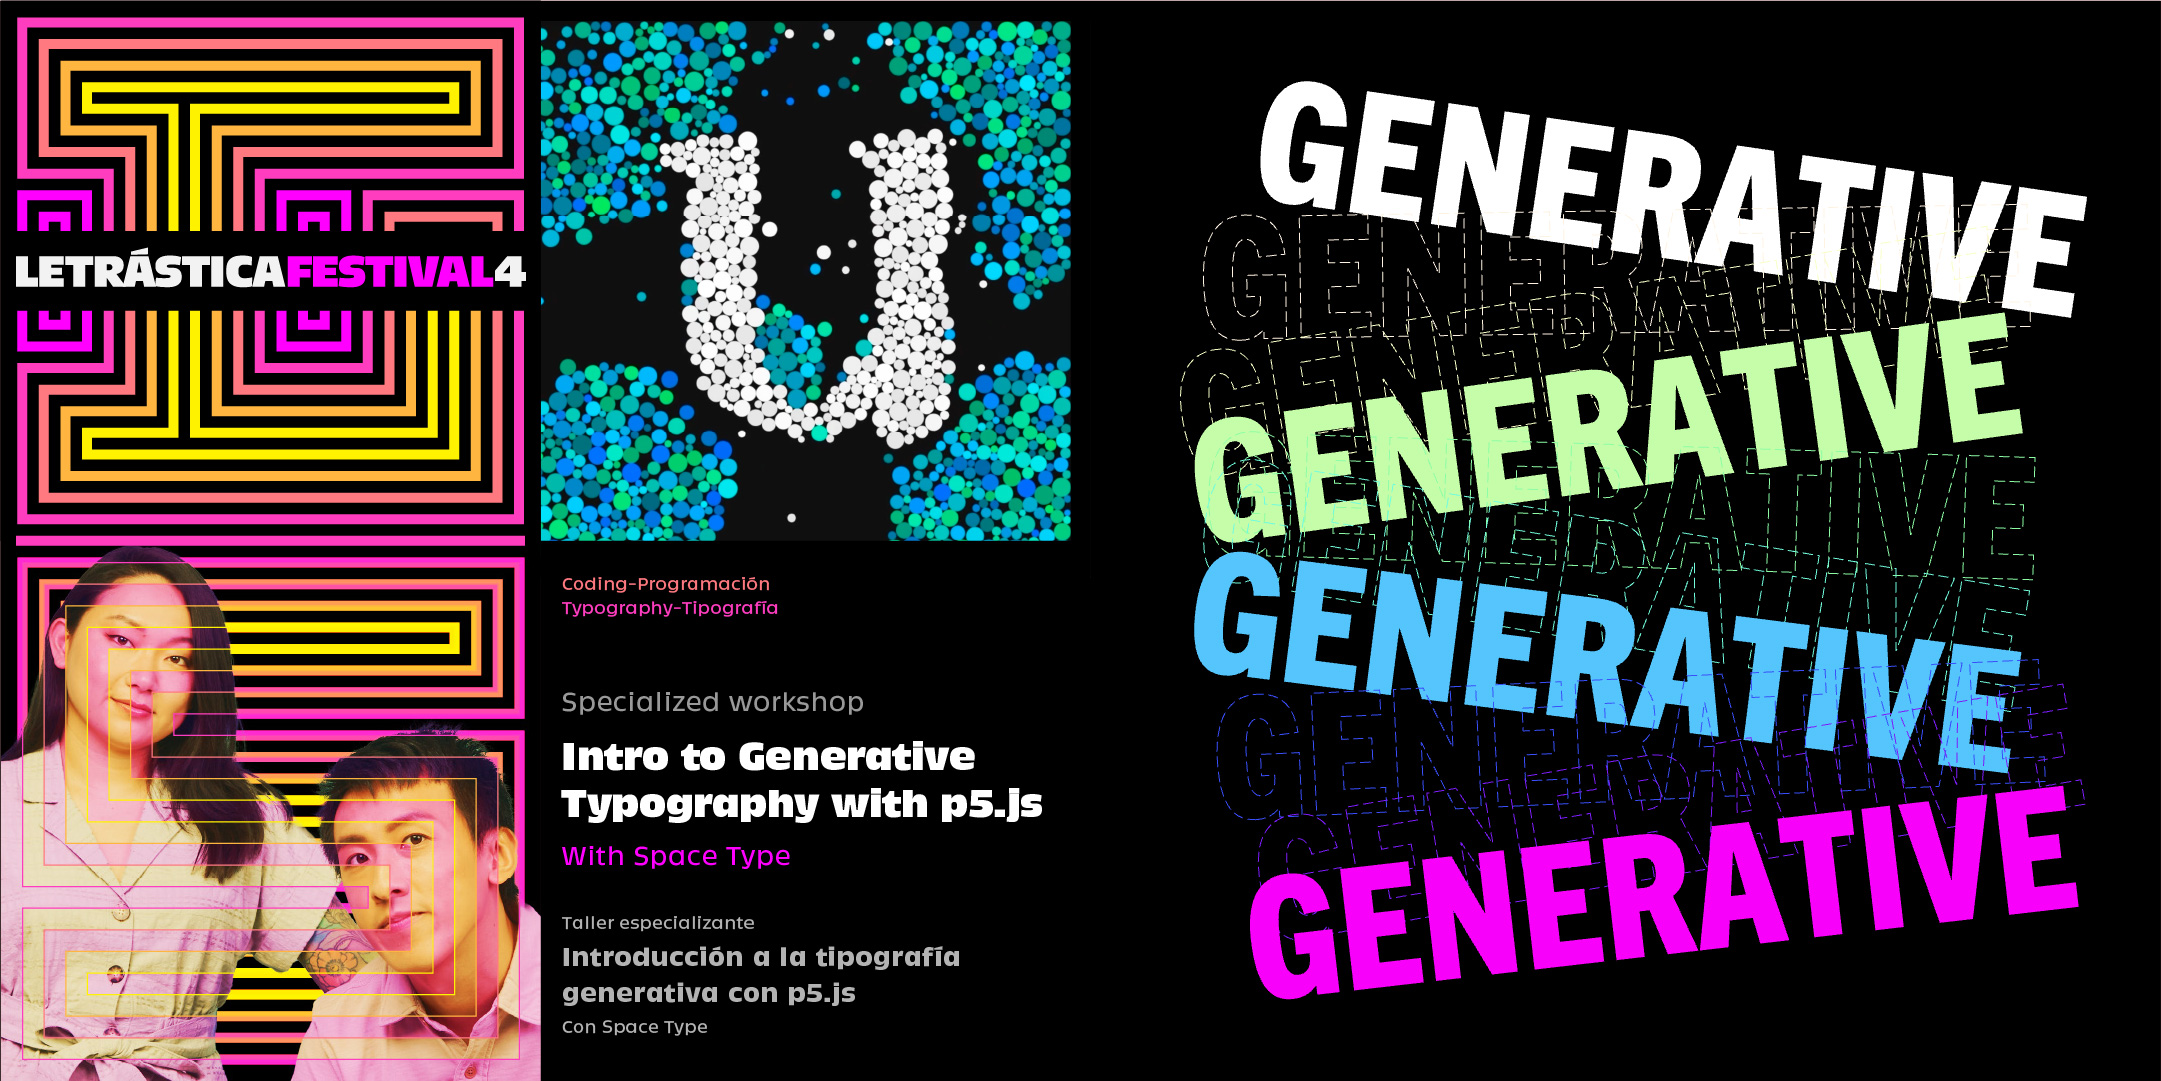 Introducción a la tipografía generativa con p5.js